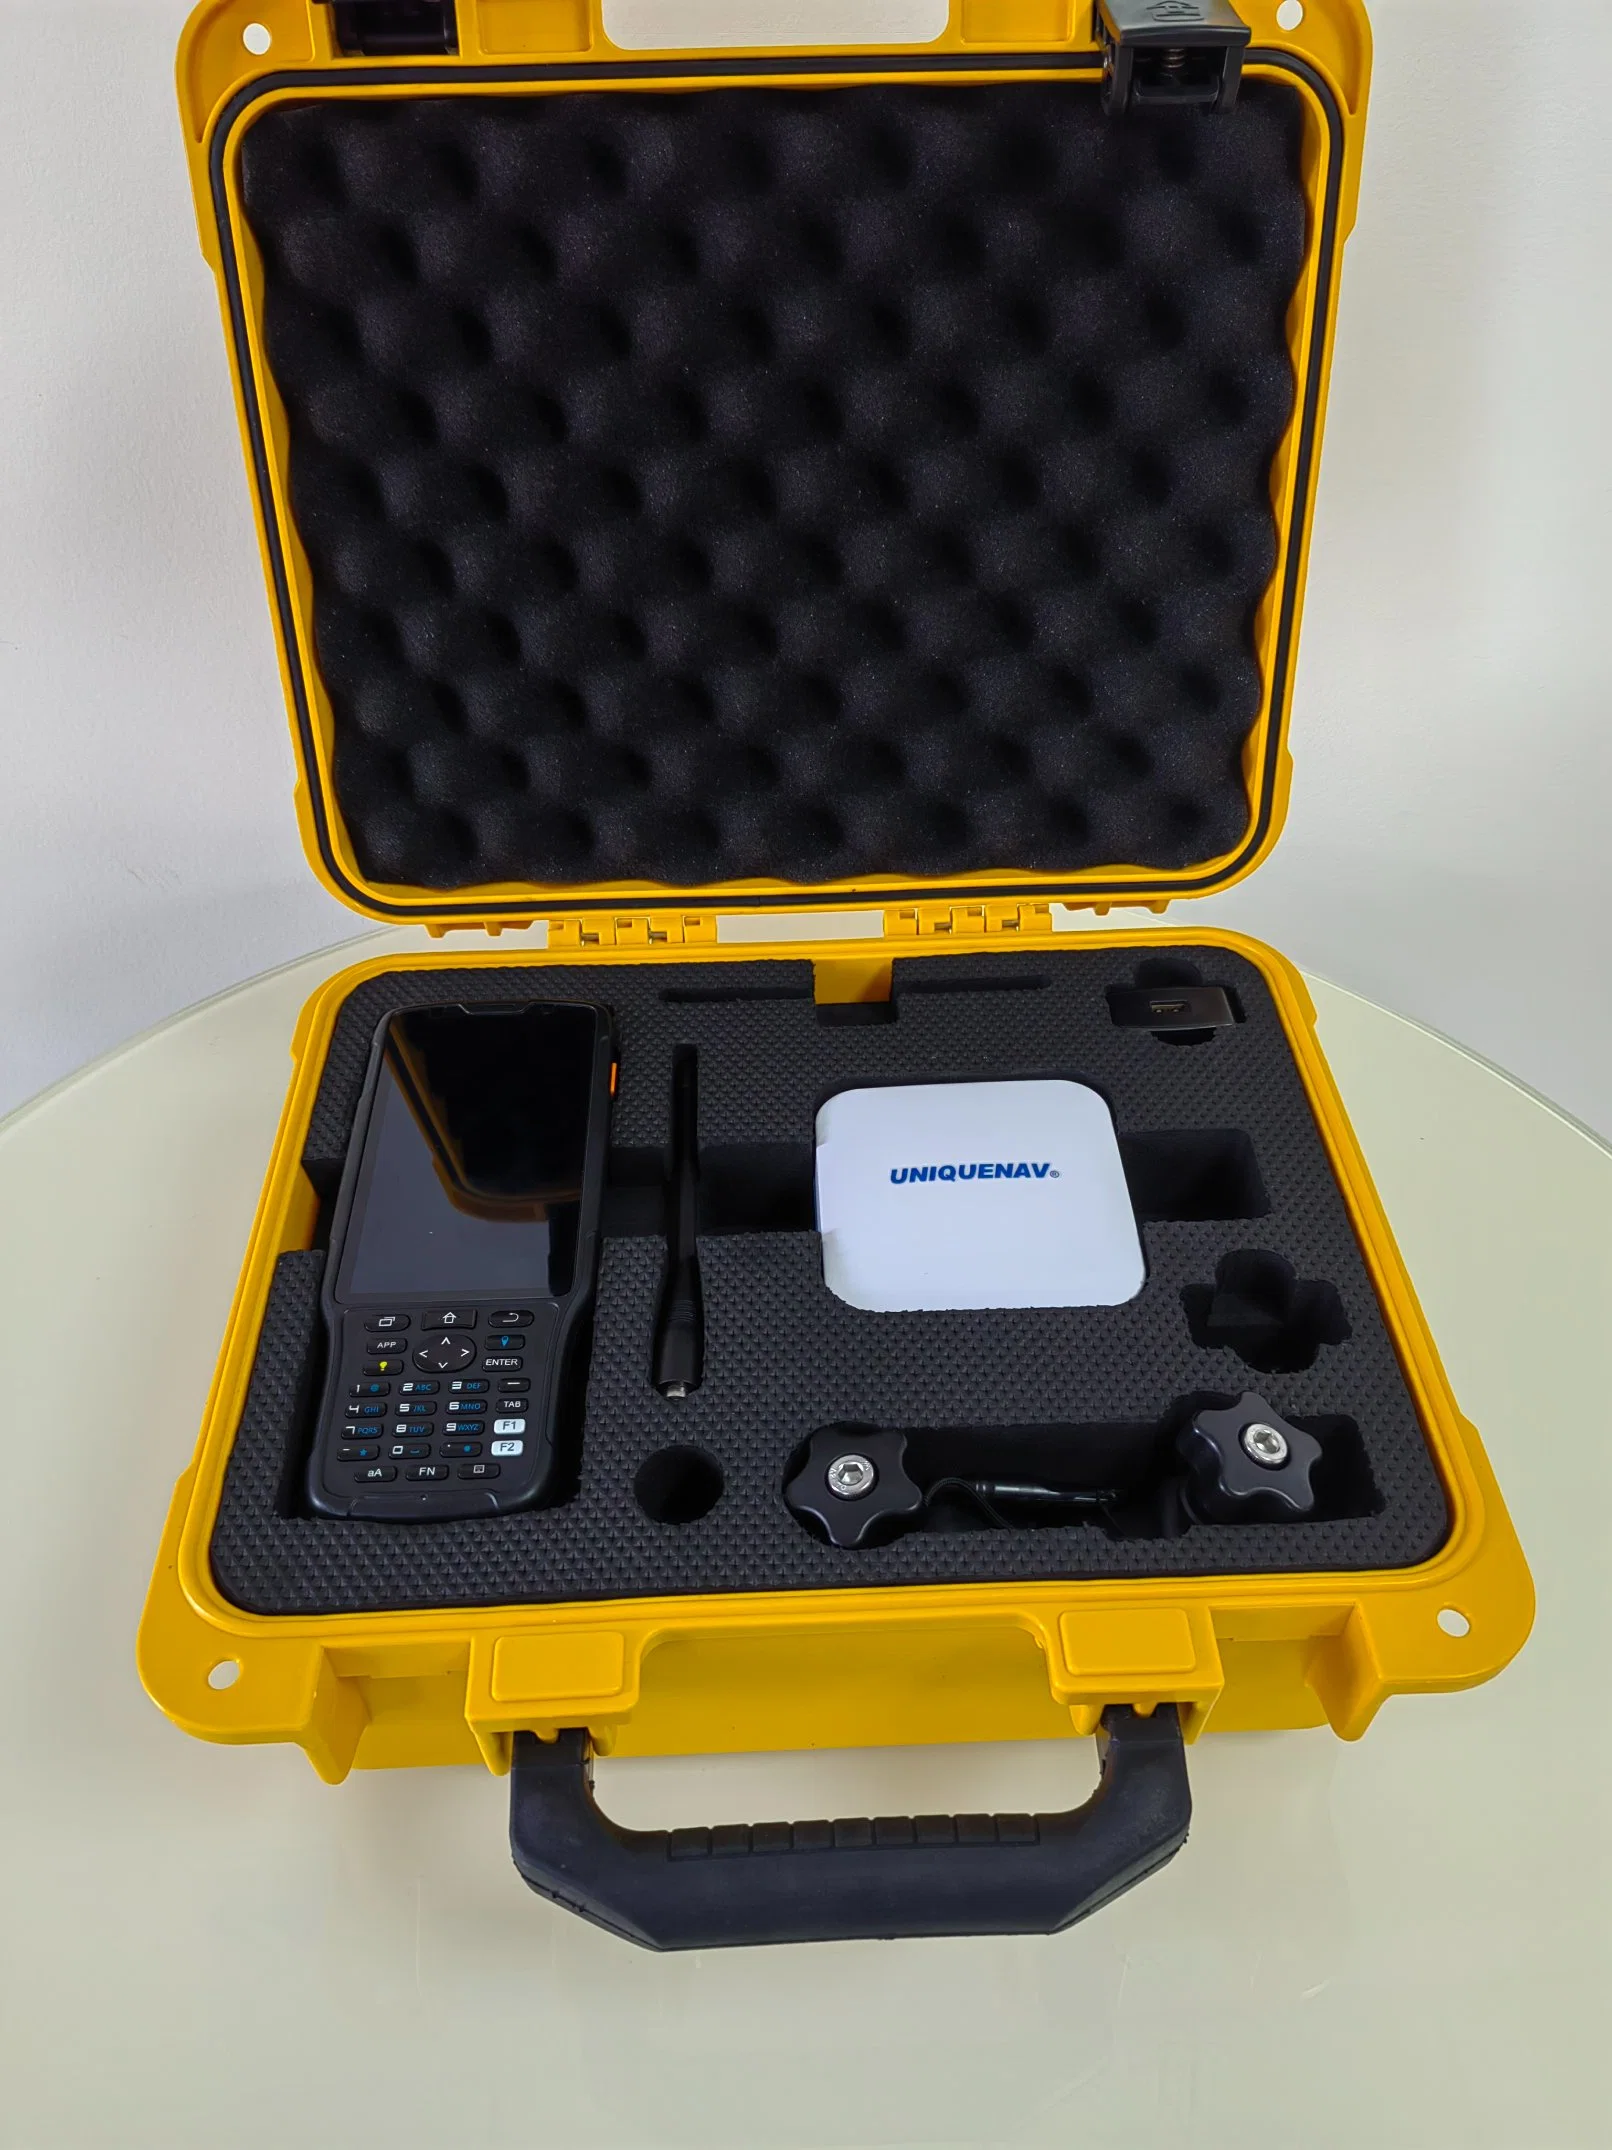 Uniquenav M68p 1408 Kanäle GPS GNSS Empfänger mit Data Collector